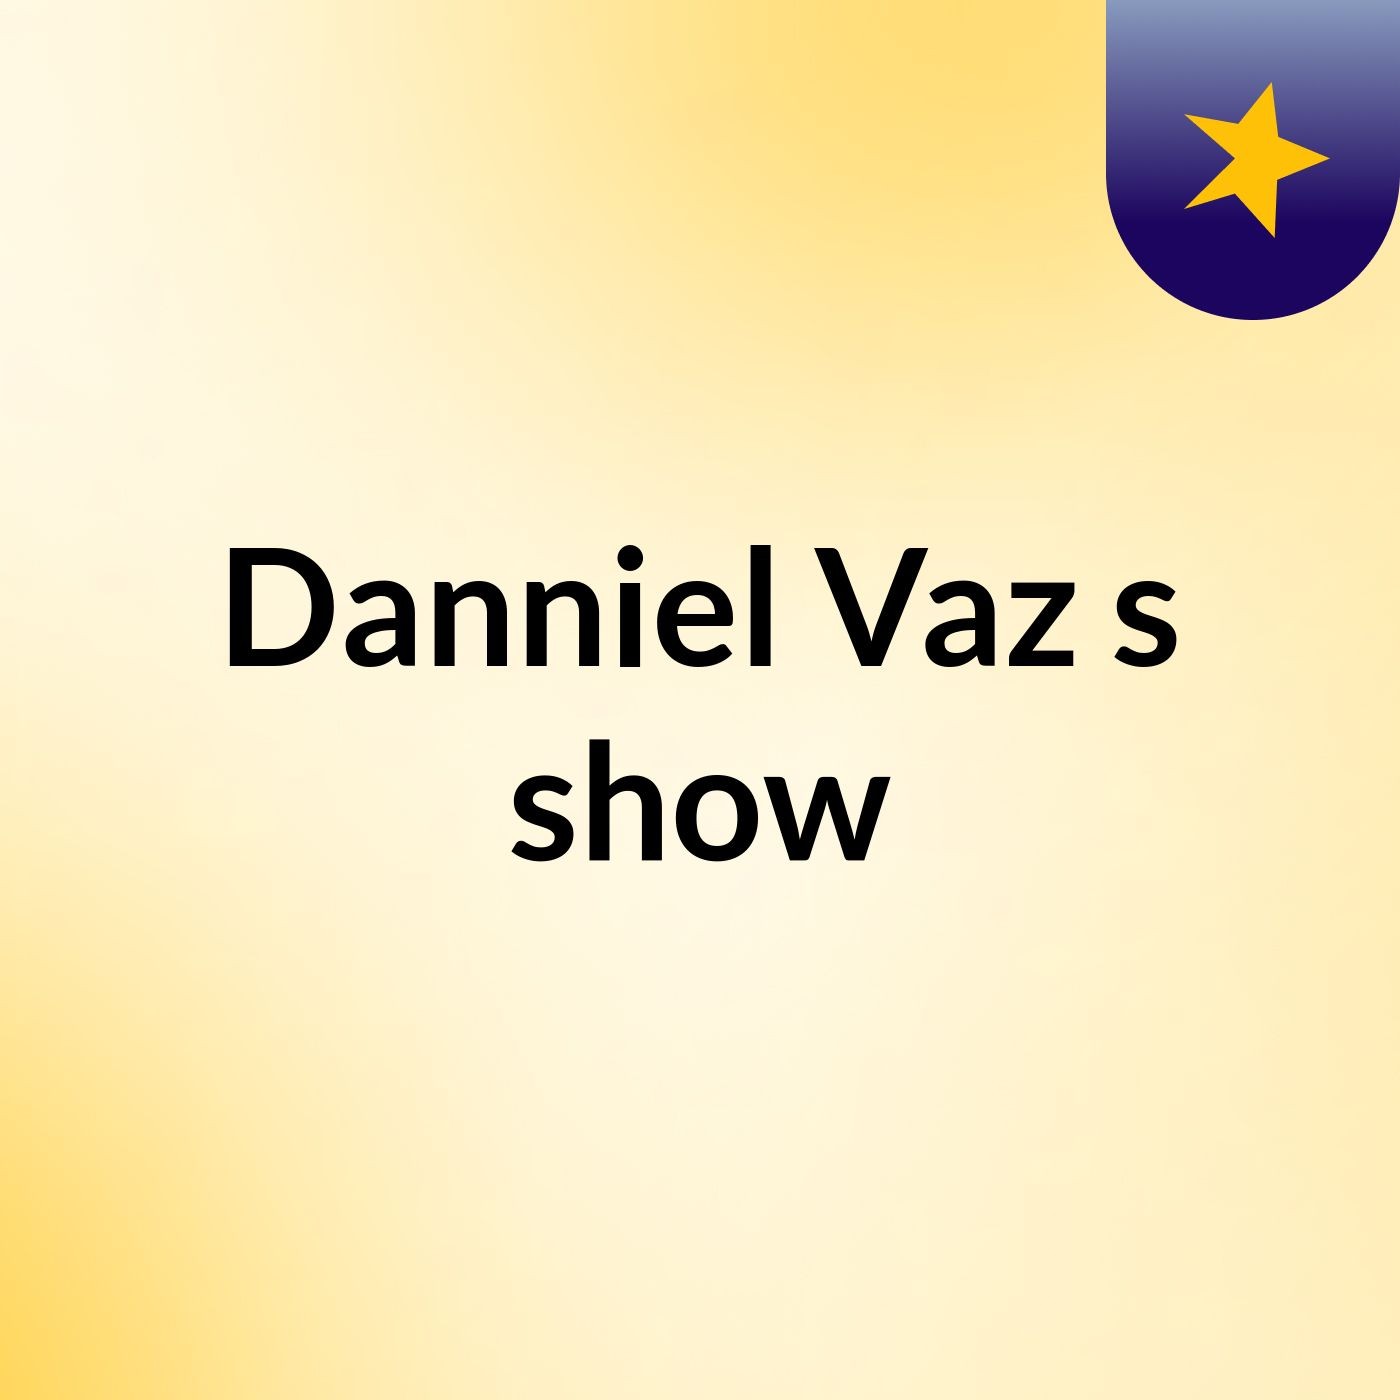 Danniel Vaz's show